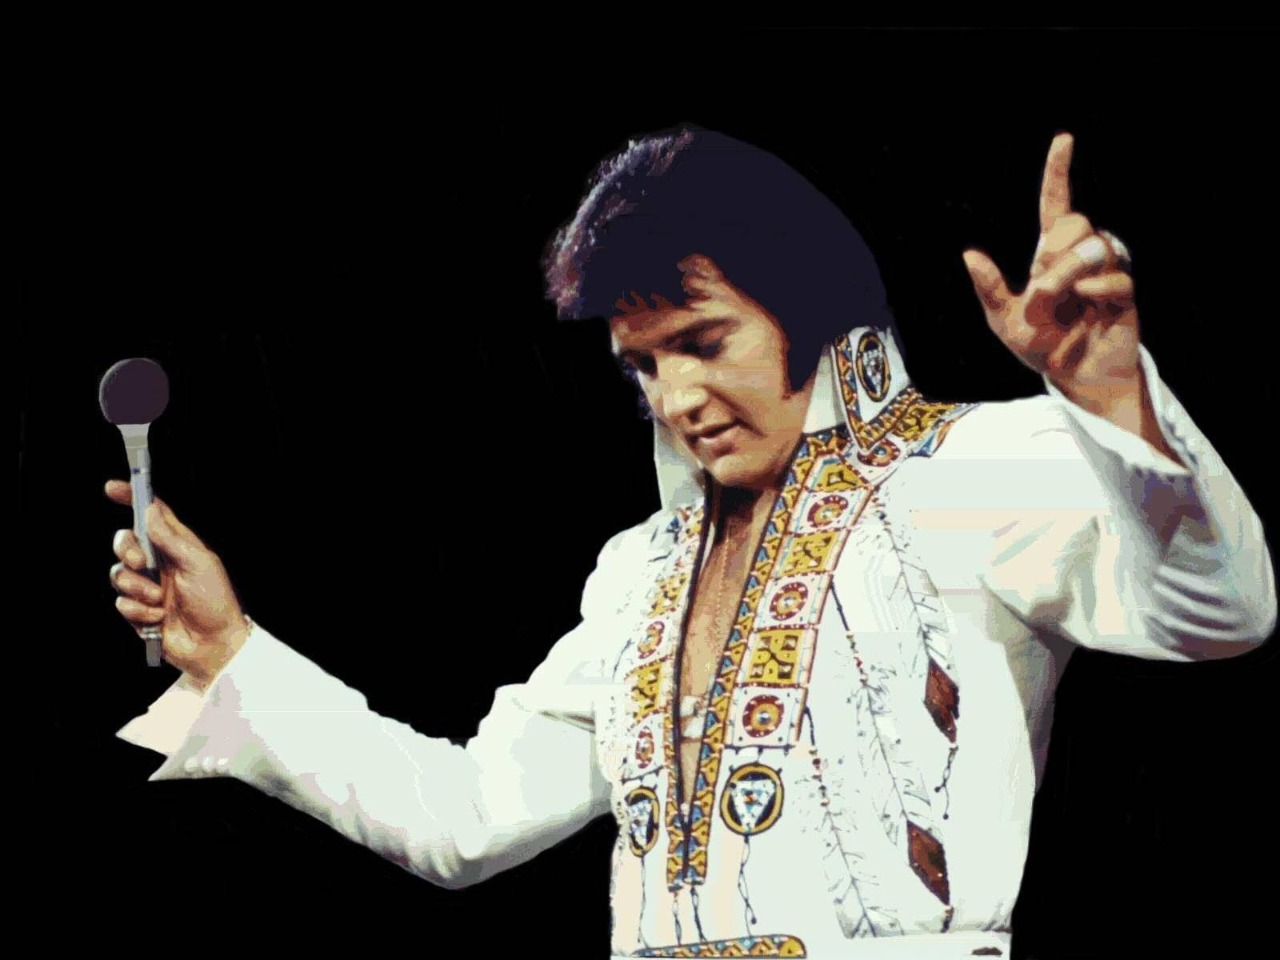 Exposição sobre a história do cantor Elvis Presley é destaque no RibeirãoShopping durante o mês do rock